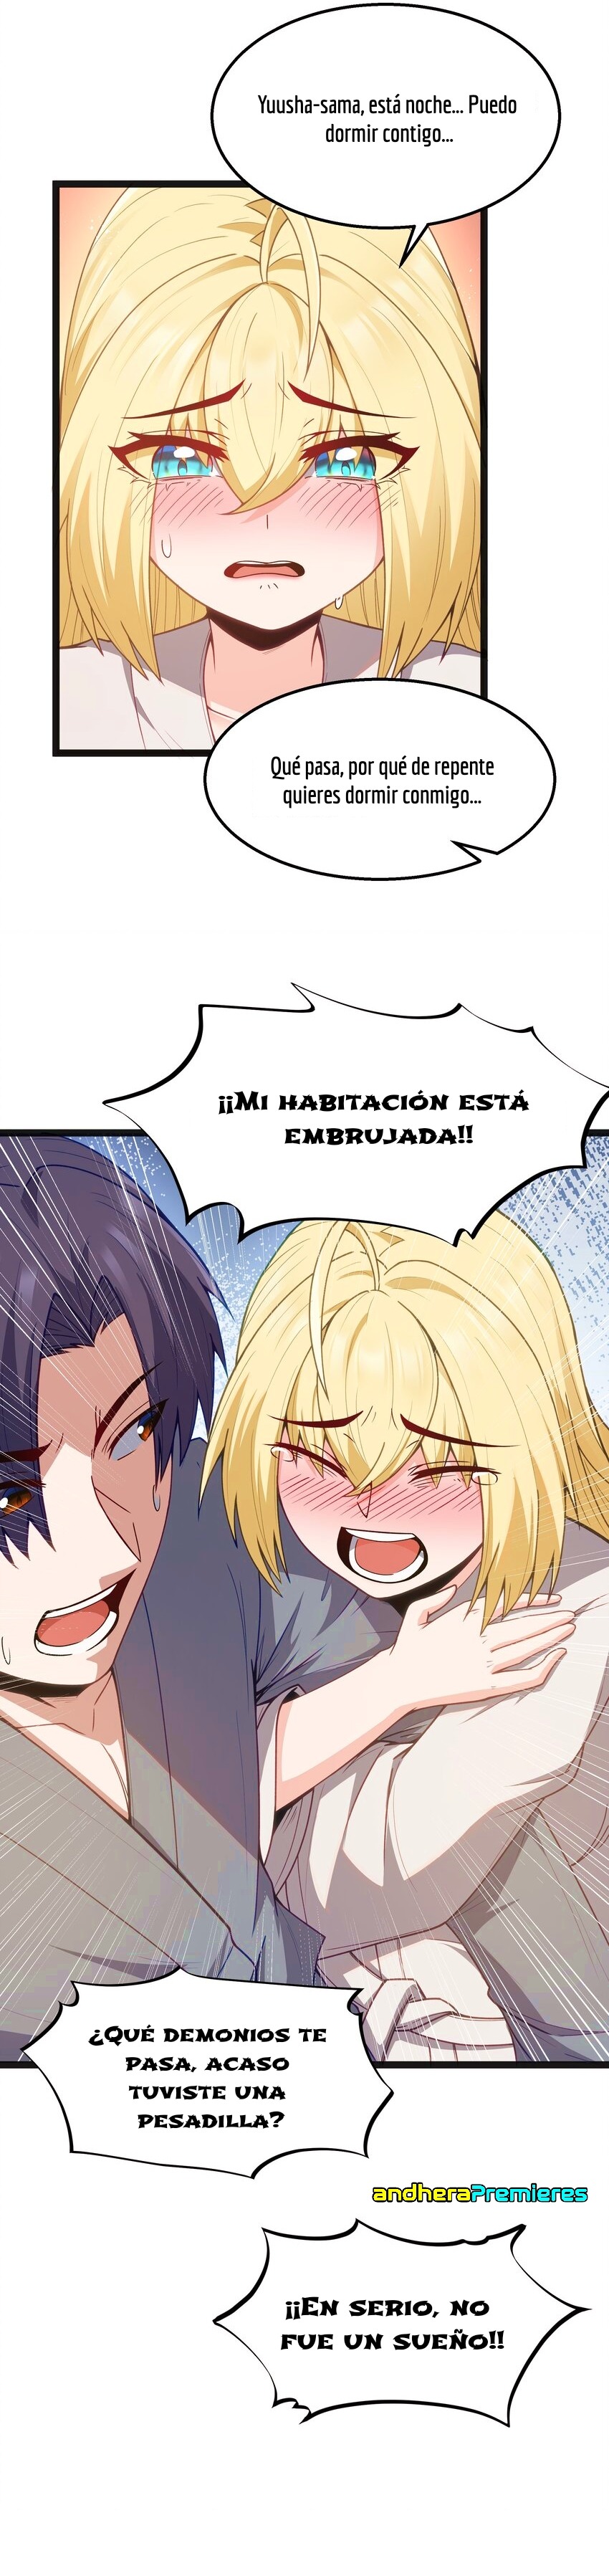 Manga El Héroe de la Avaricia Chapter 19 image number 16